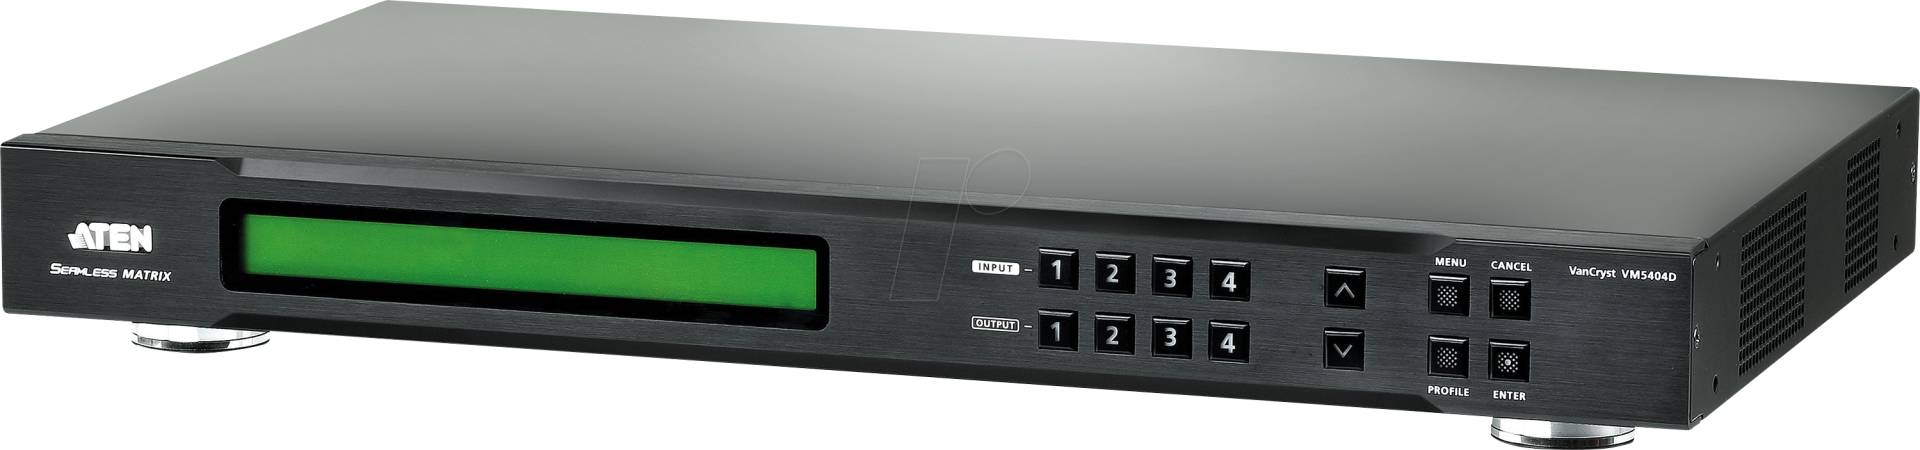 ATEN VM5404D - 4x4 DVI Matrix-Switch von Aten